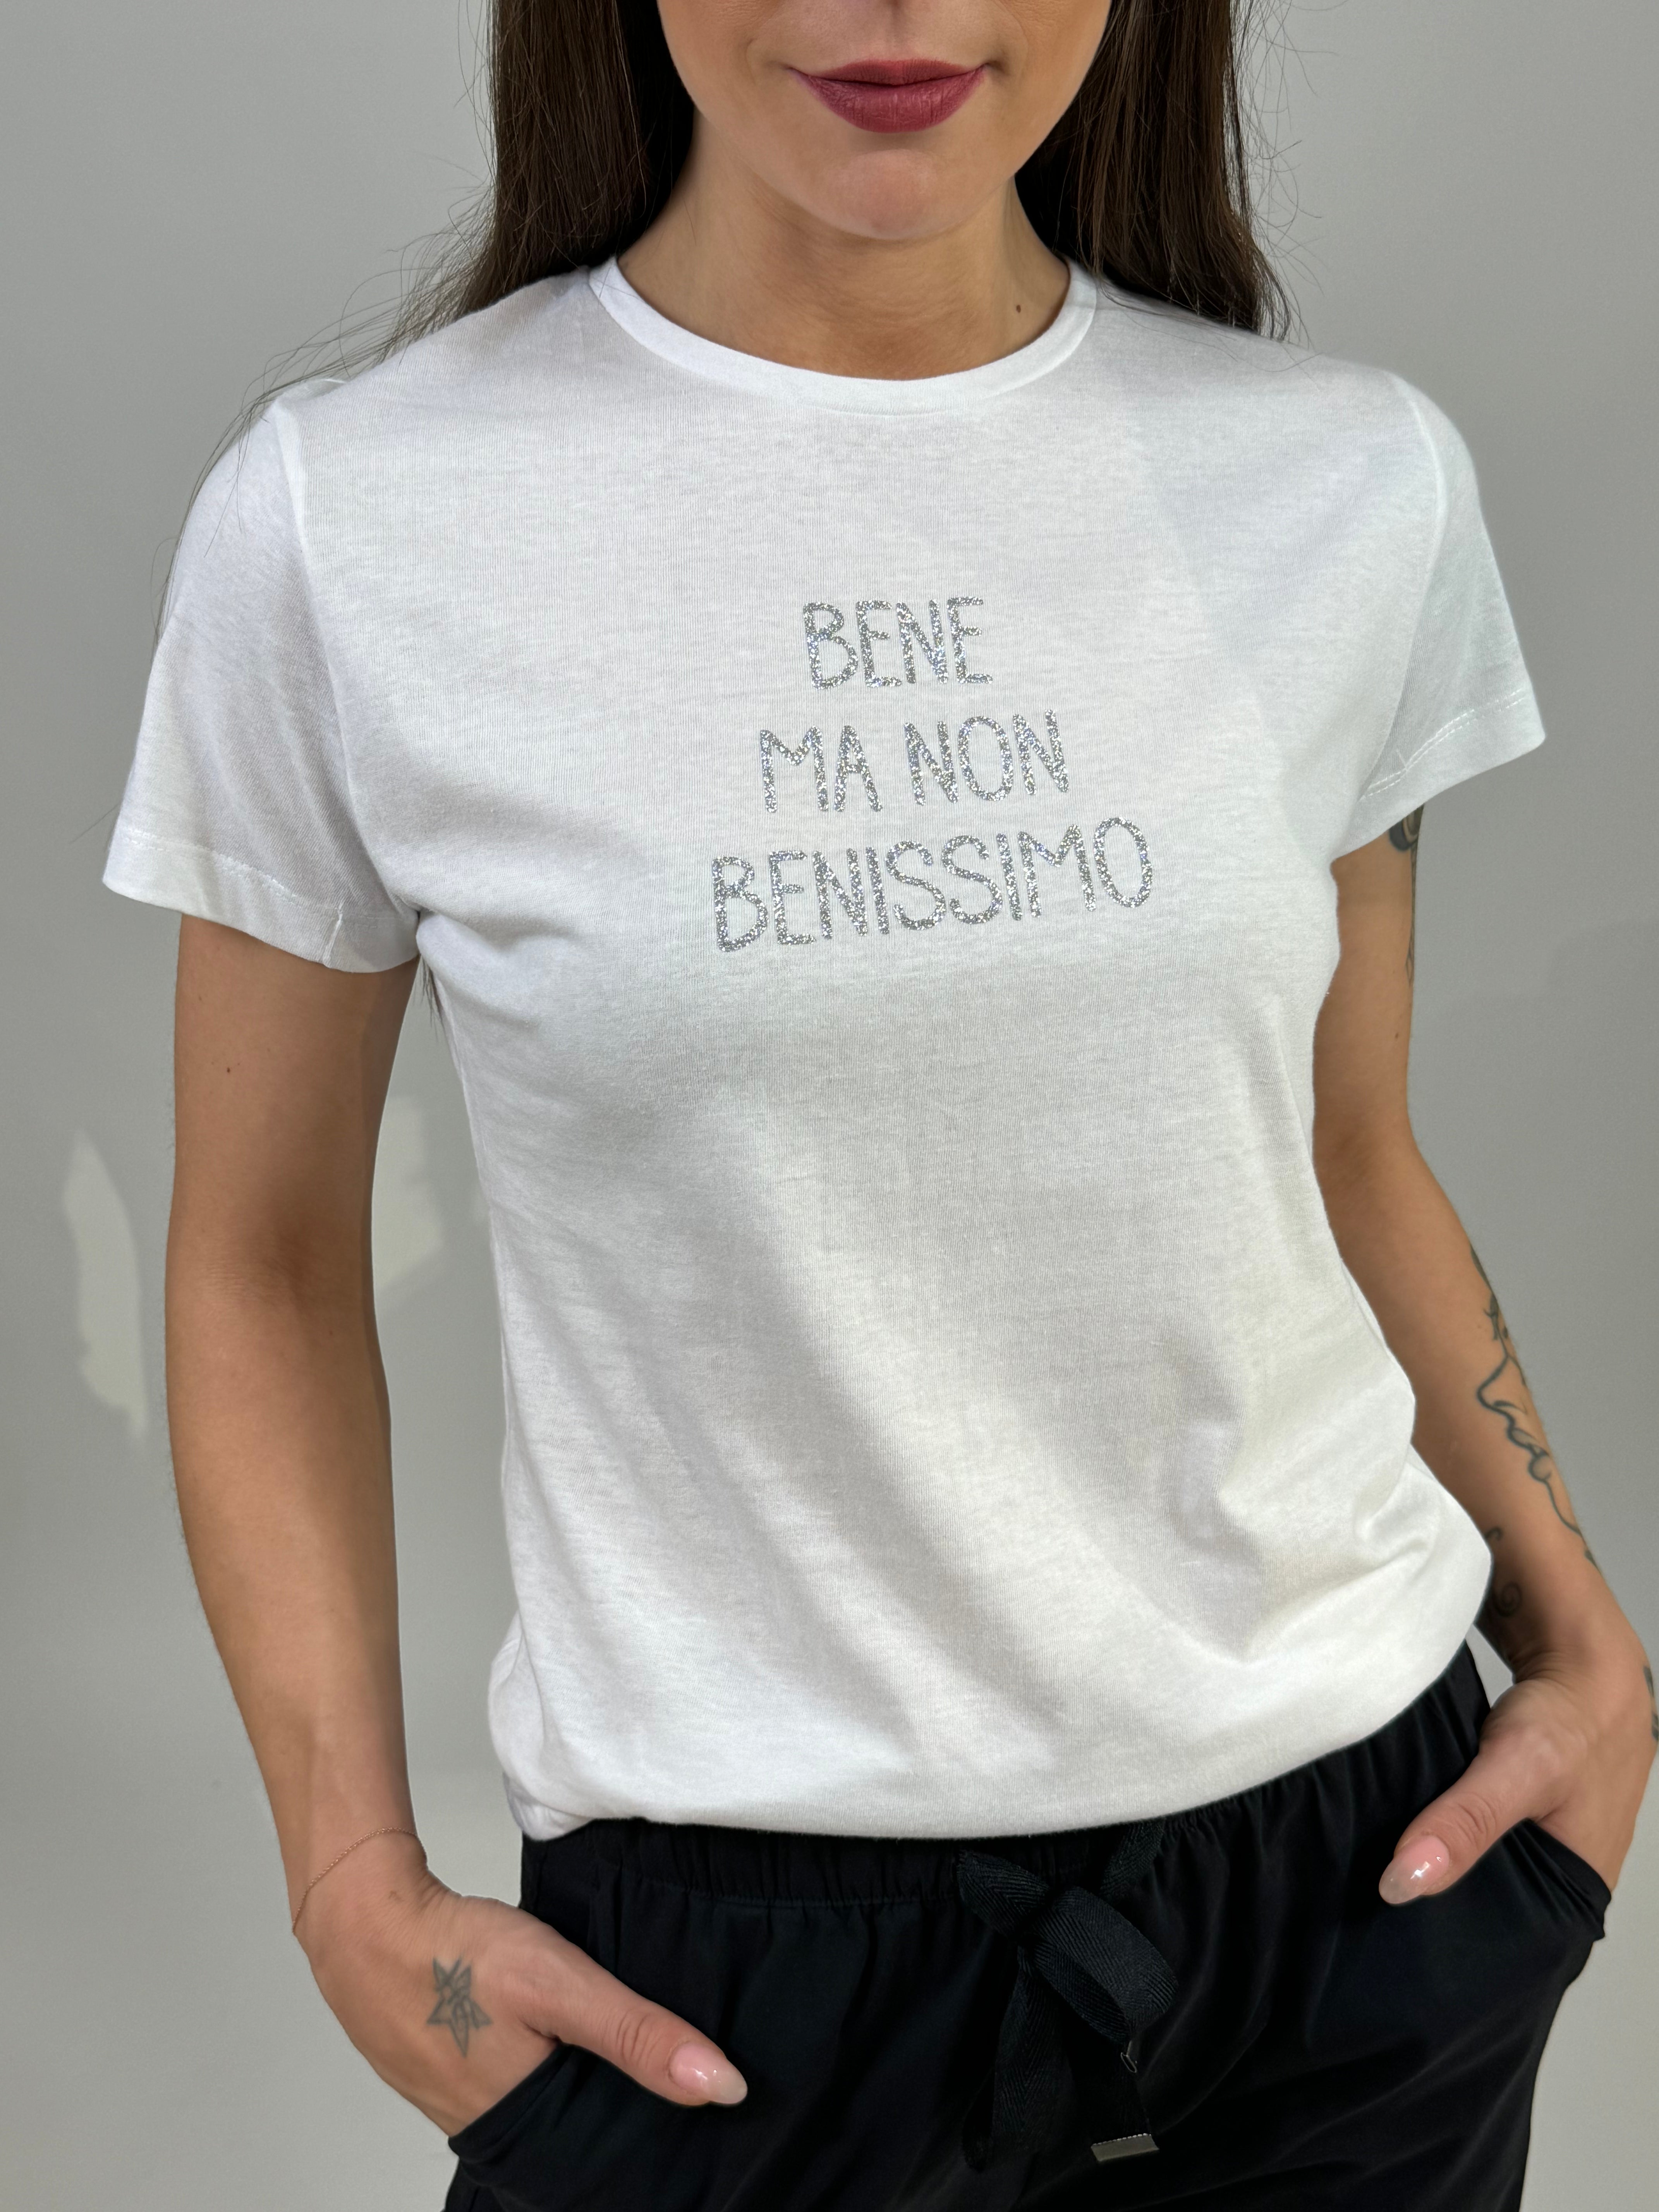 T-shirt in cotone sfiancata Susy Mix BENE MA NON BENISSIMO